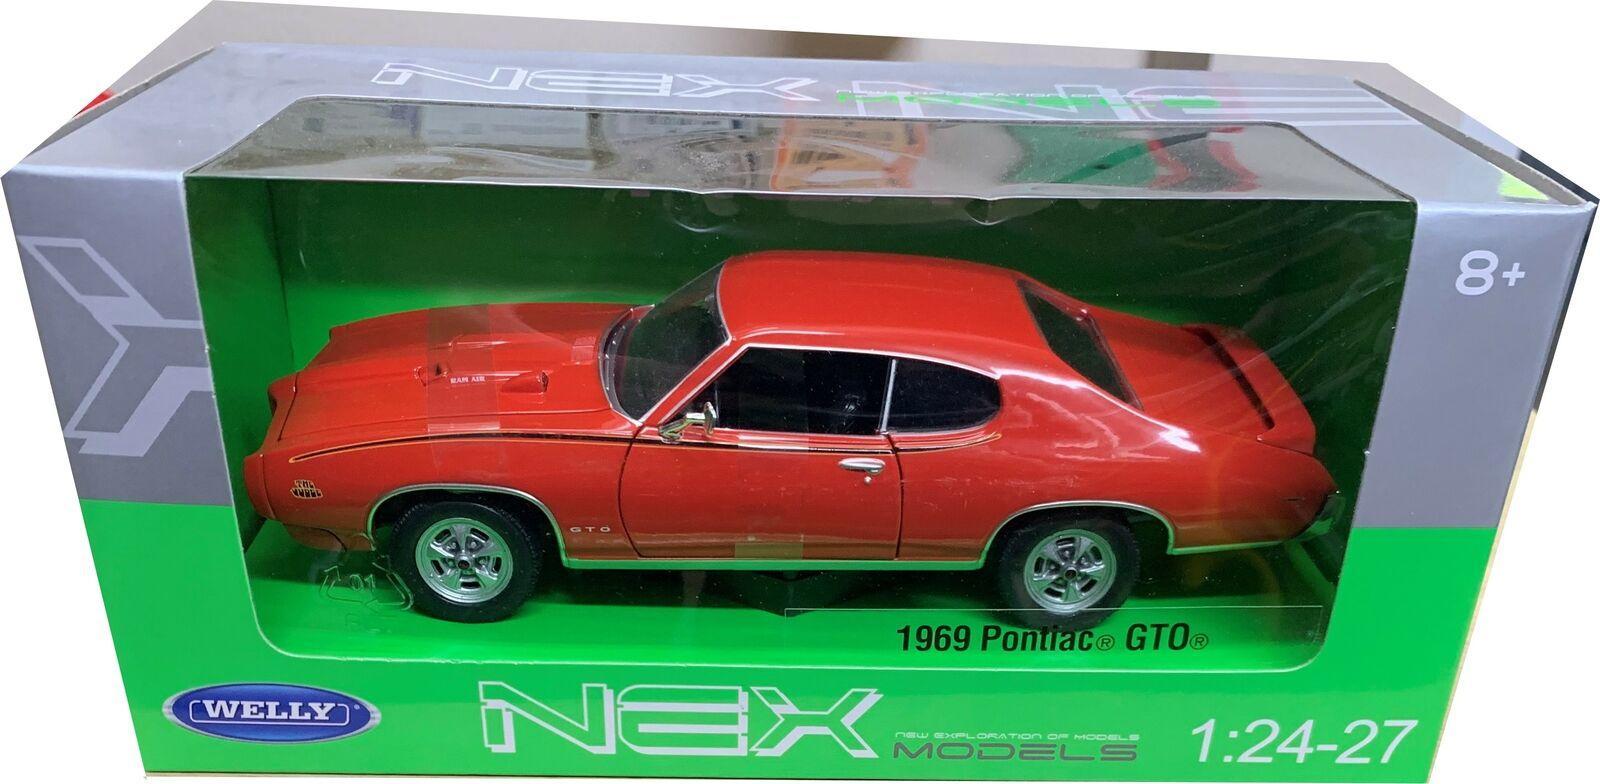 Pontiac GTO 1969 in orange 1:24 scale model from Welly / NEX